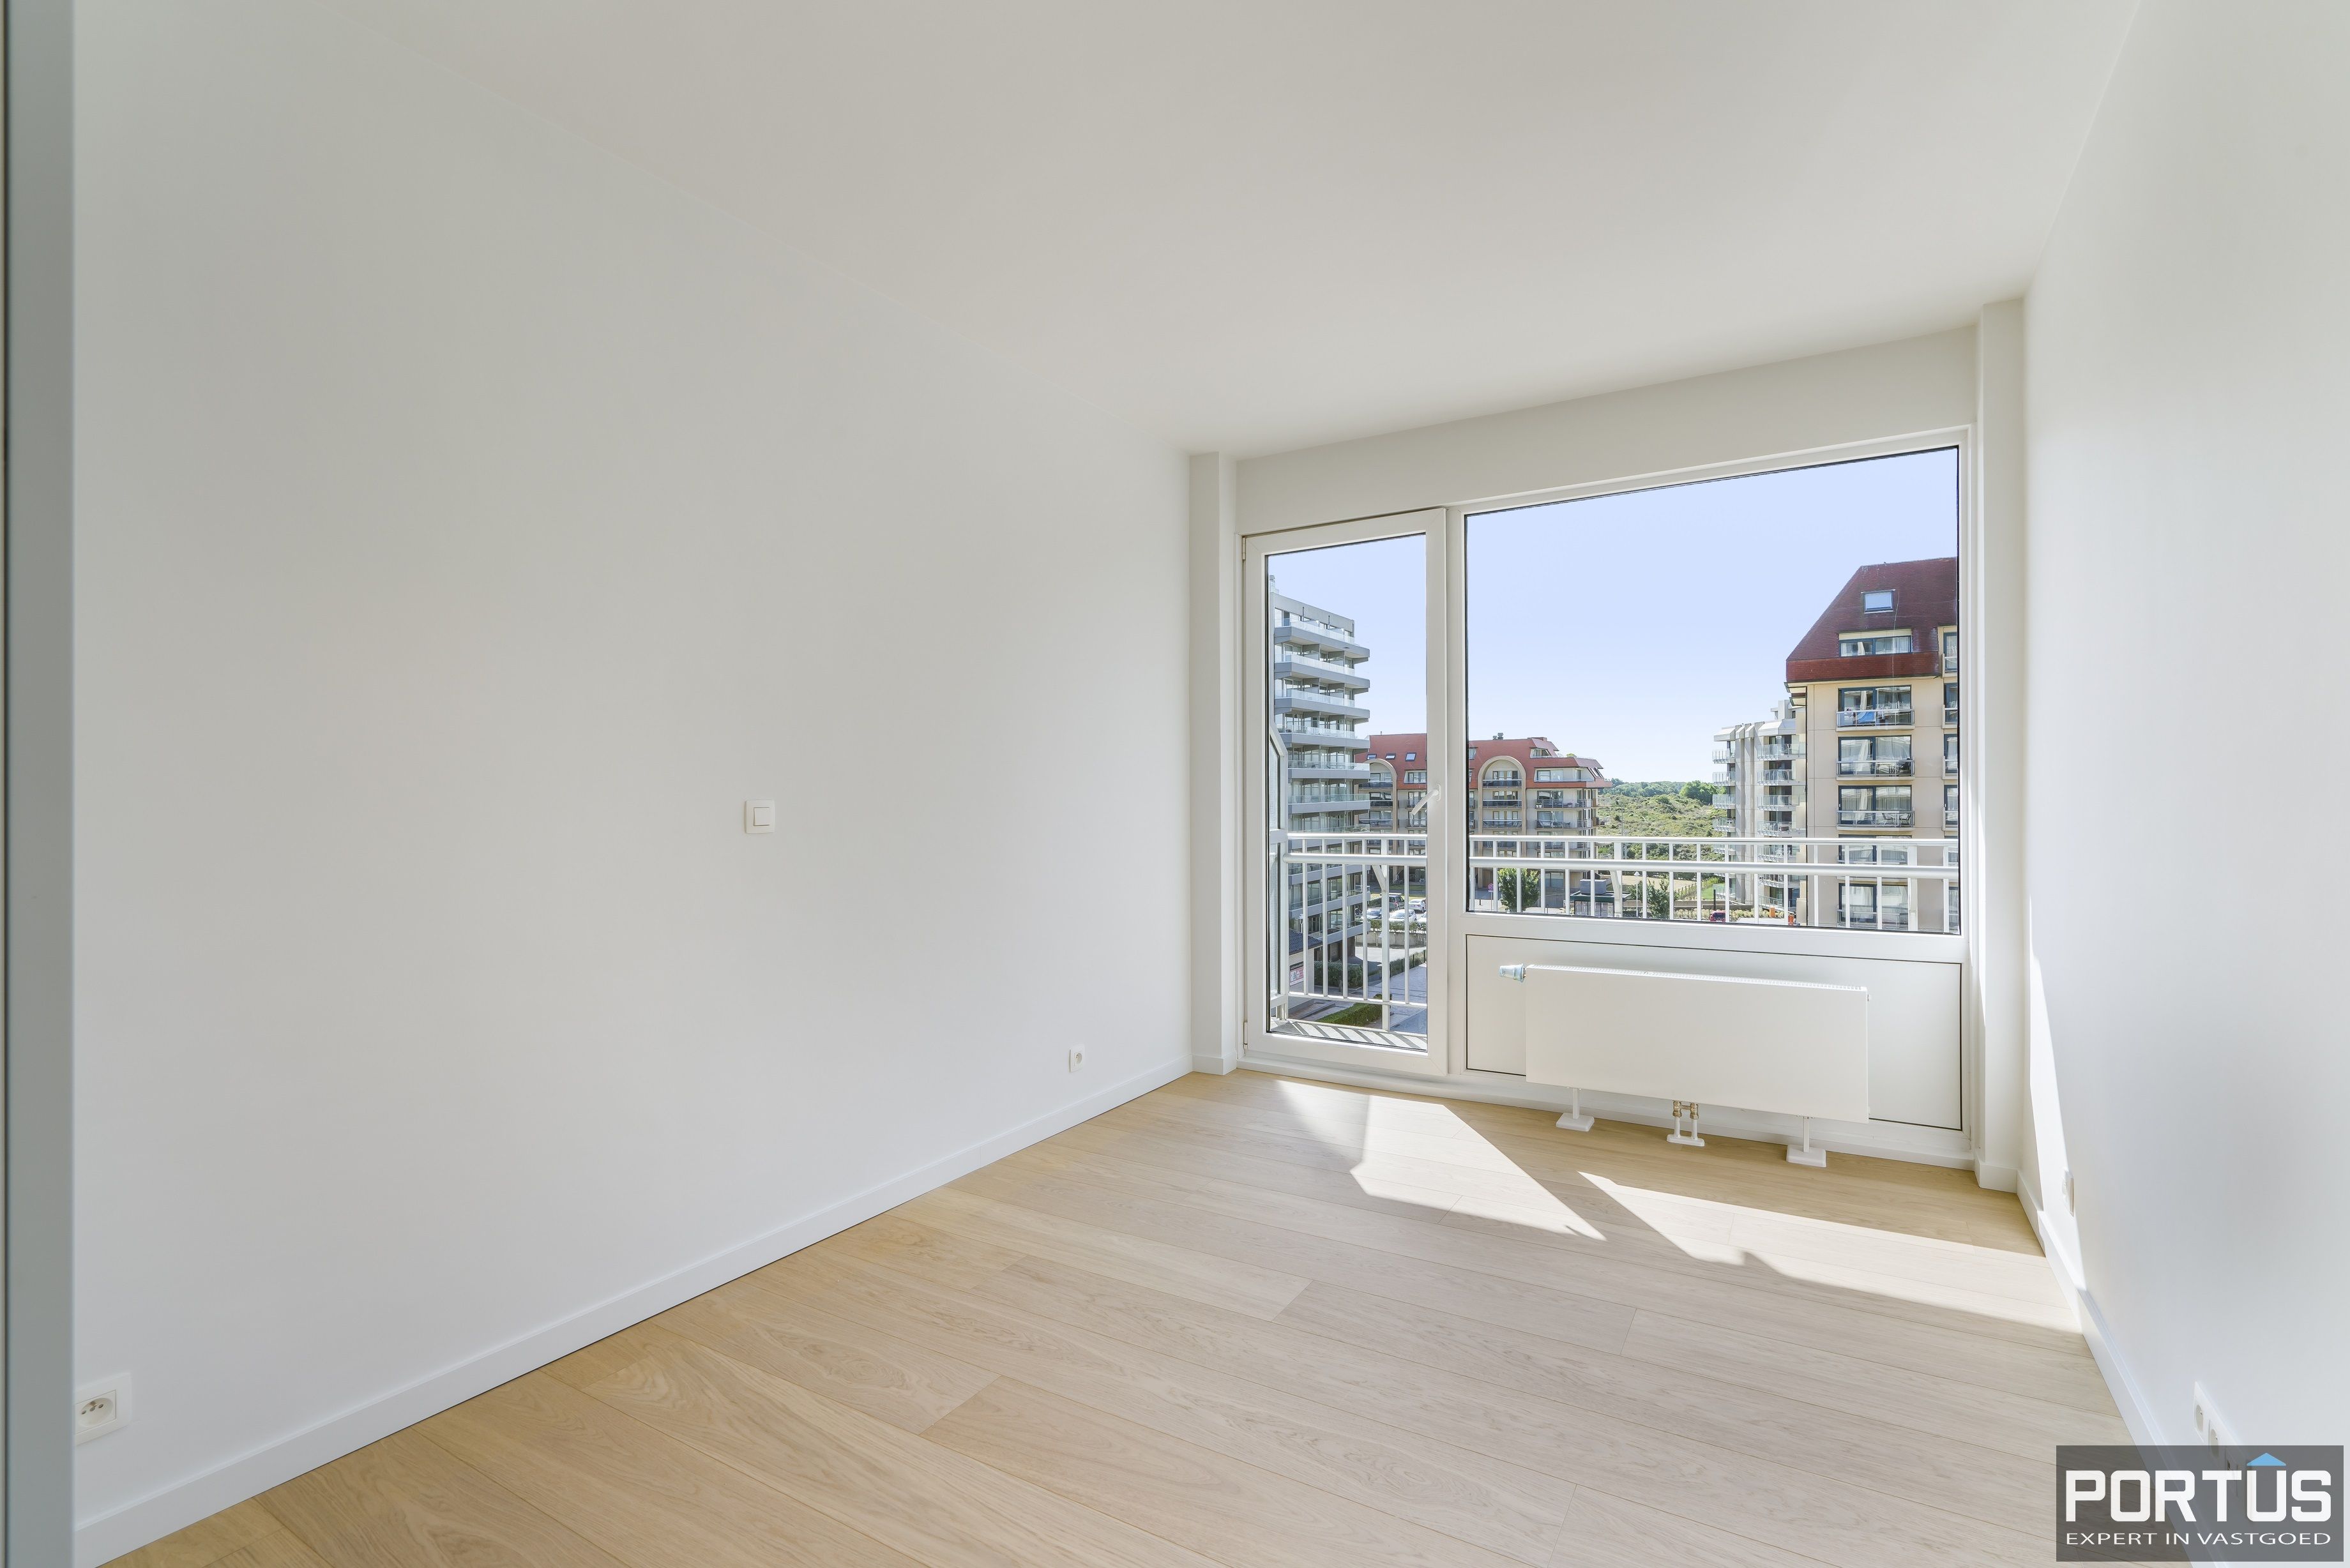 Exclusief appartement met frontaal zeezicht te koop te Nieuwpoort - 15570